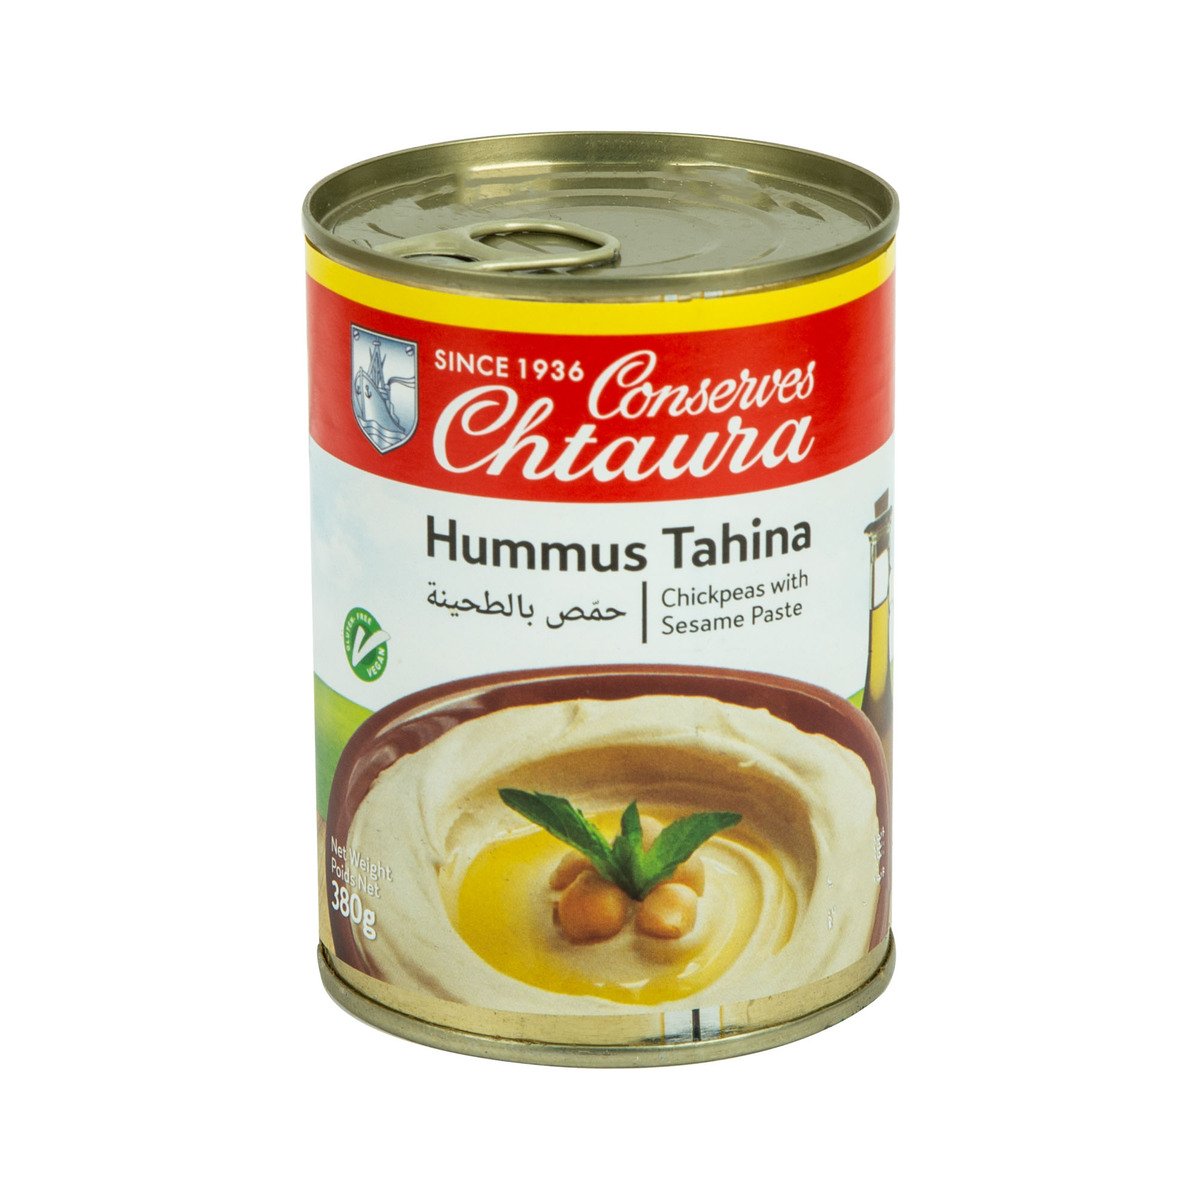 Chtaura Hummus Tahina 380 g